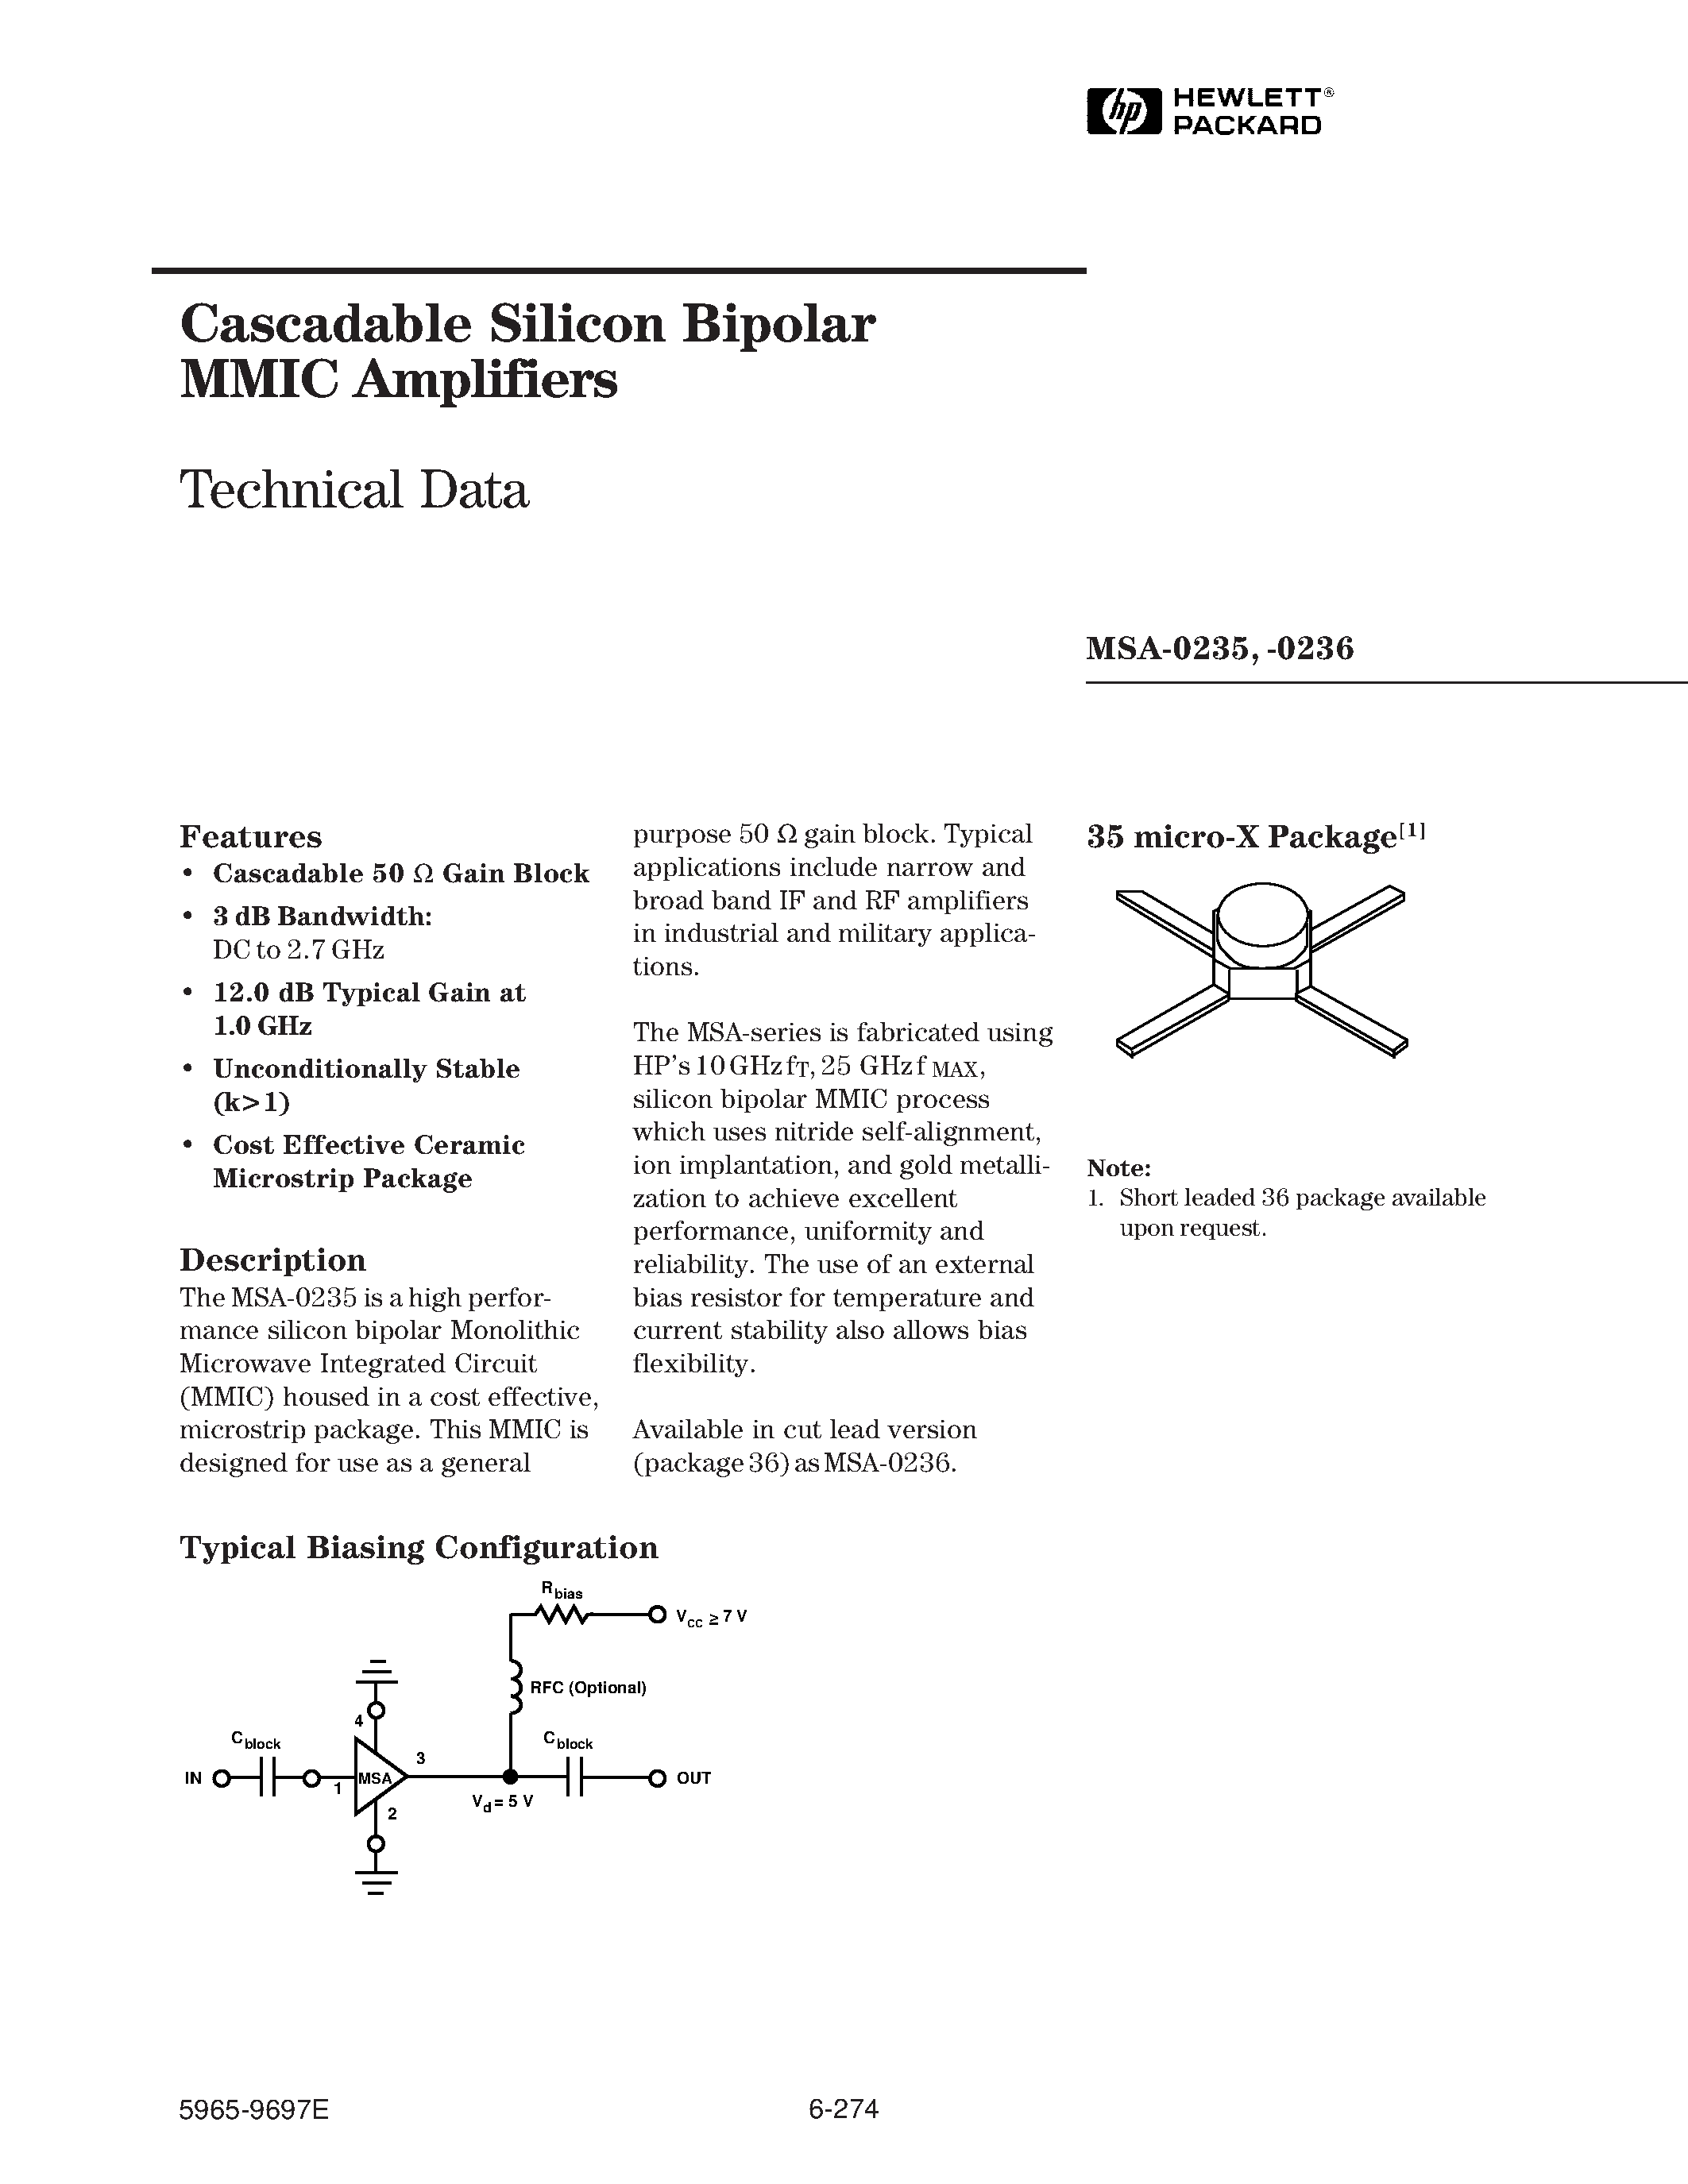 Даташит MSA-0235-(MSA-0235 / MSA-0236) Cascadable Silicon Bipolar MMIC Amplifier страница 1